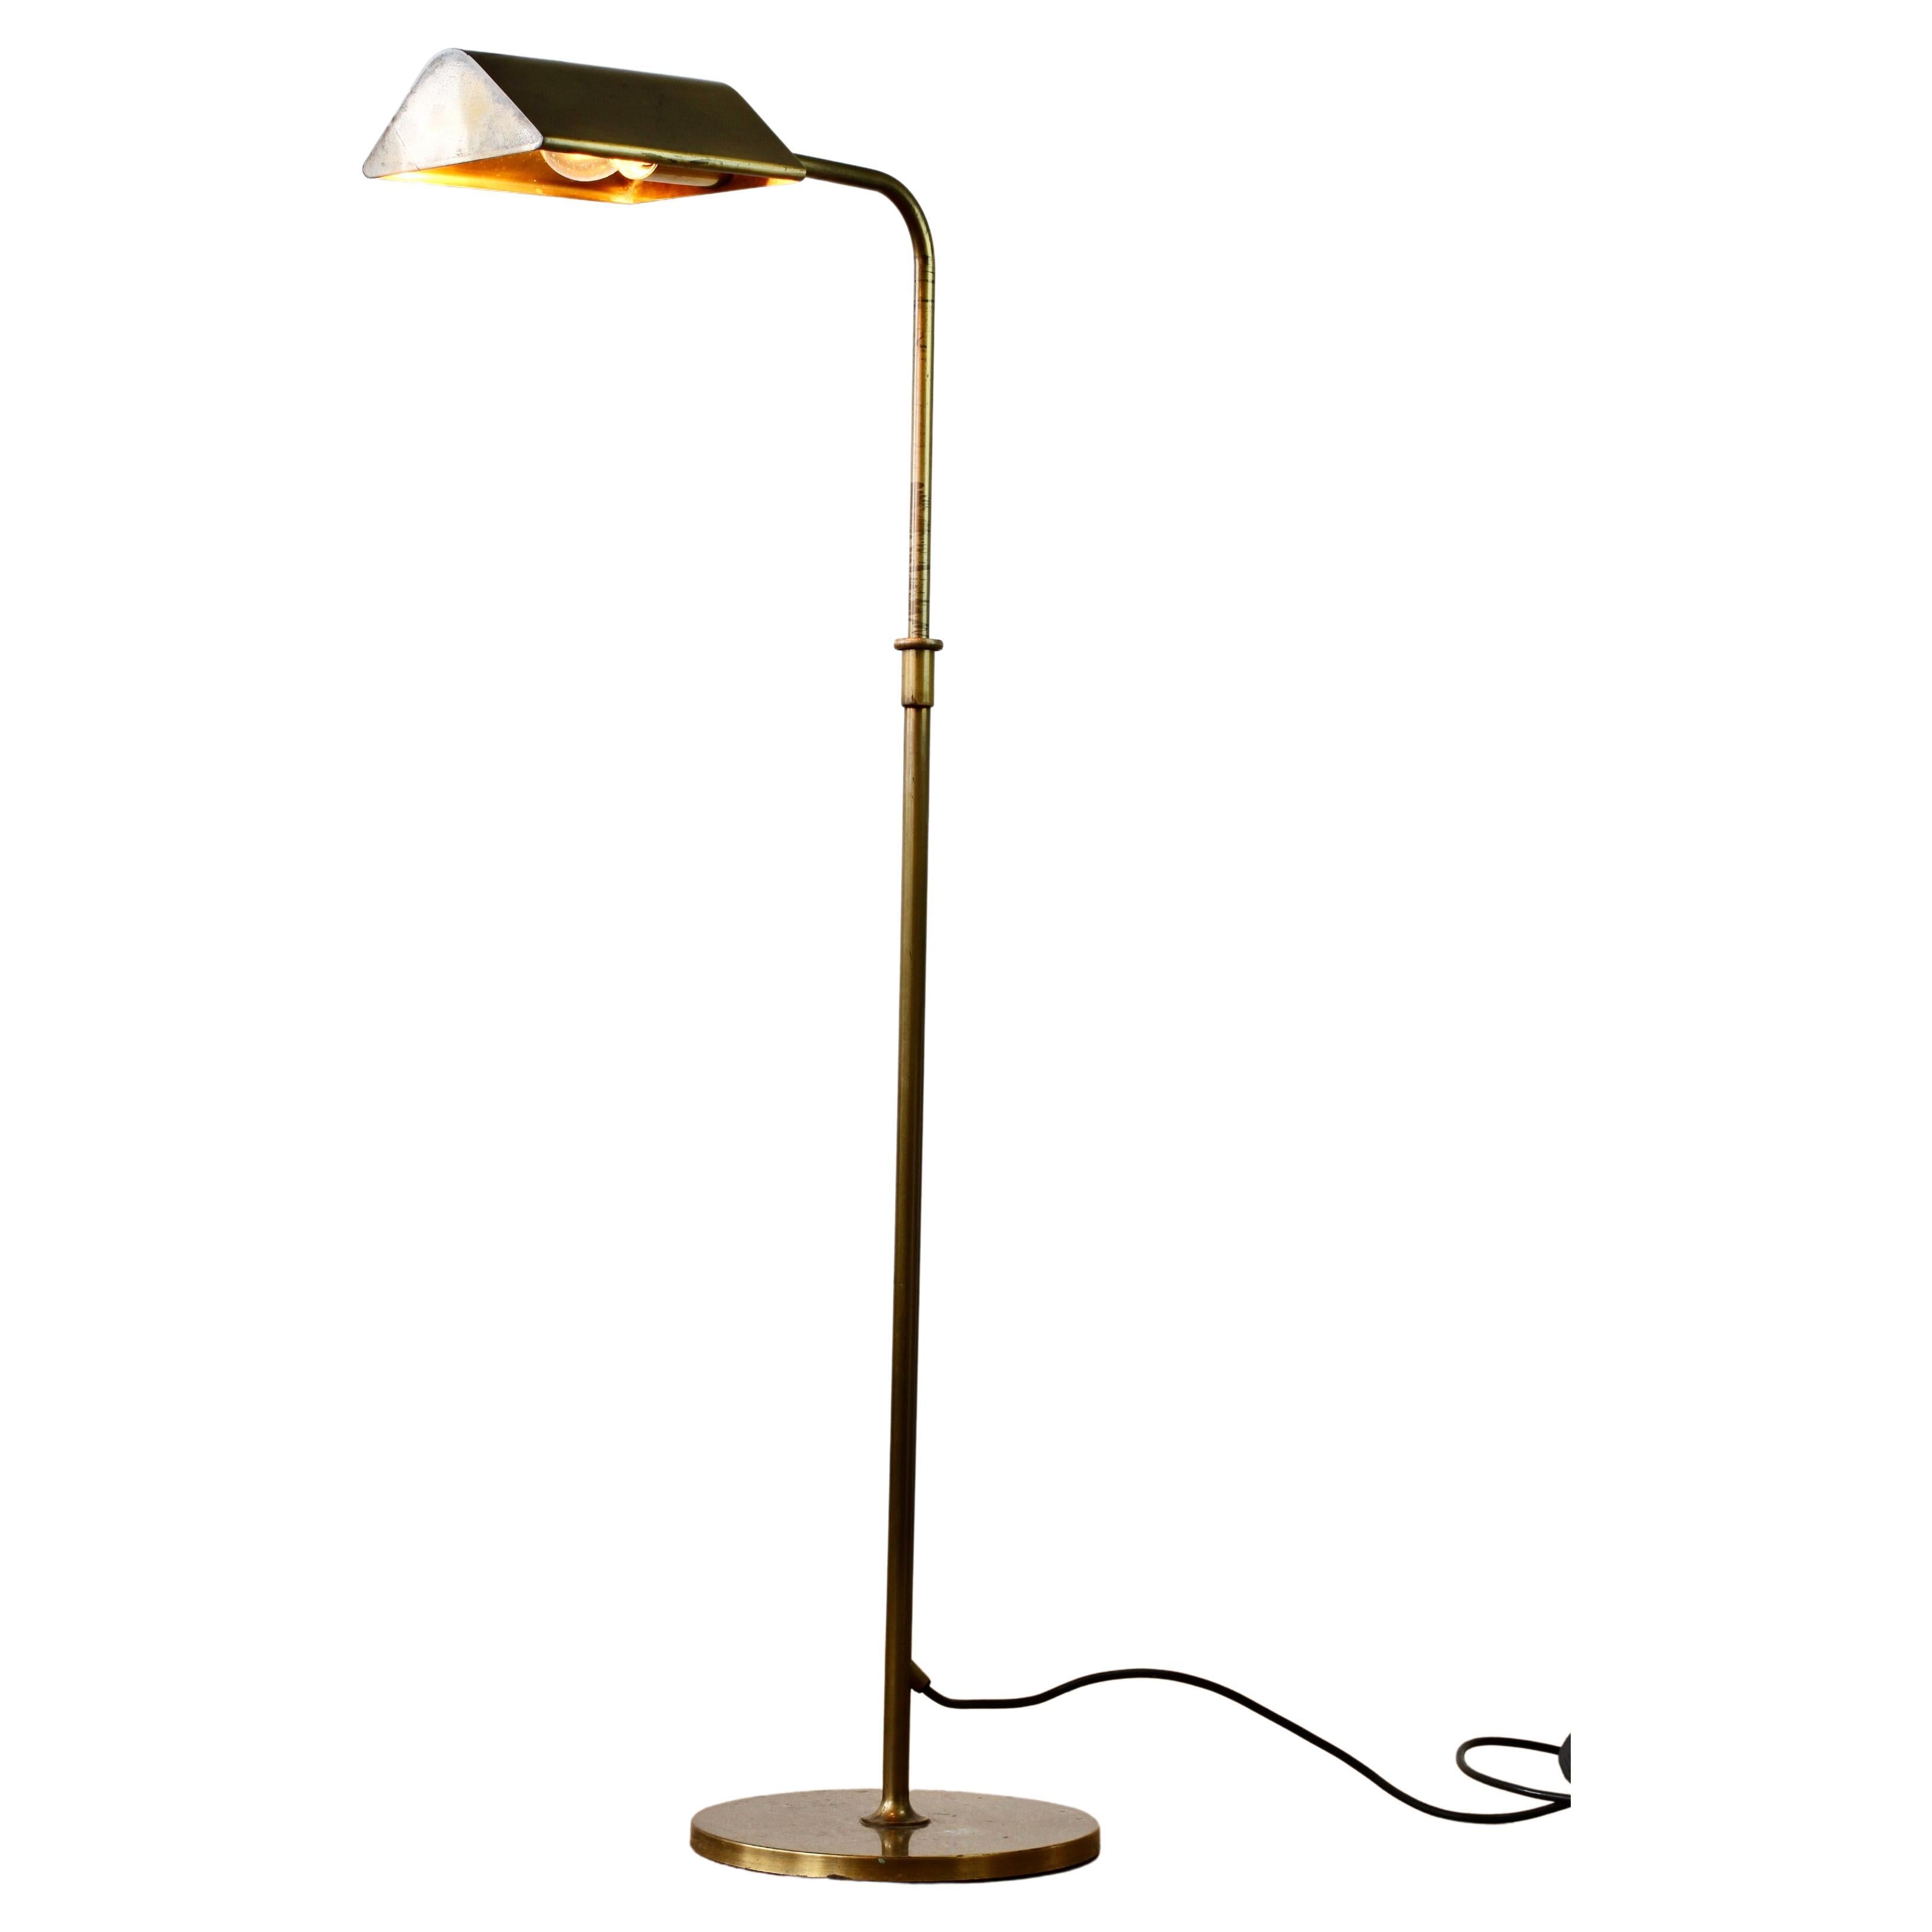 Florian Schulz Vintage Modernist Brushed Brass Adjustable Floor Lamp, circa 1985